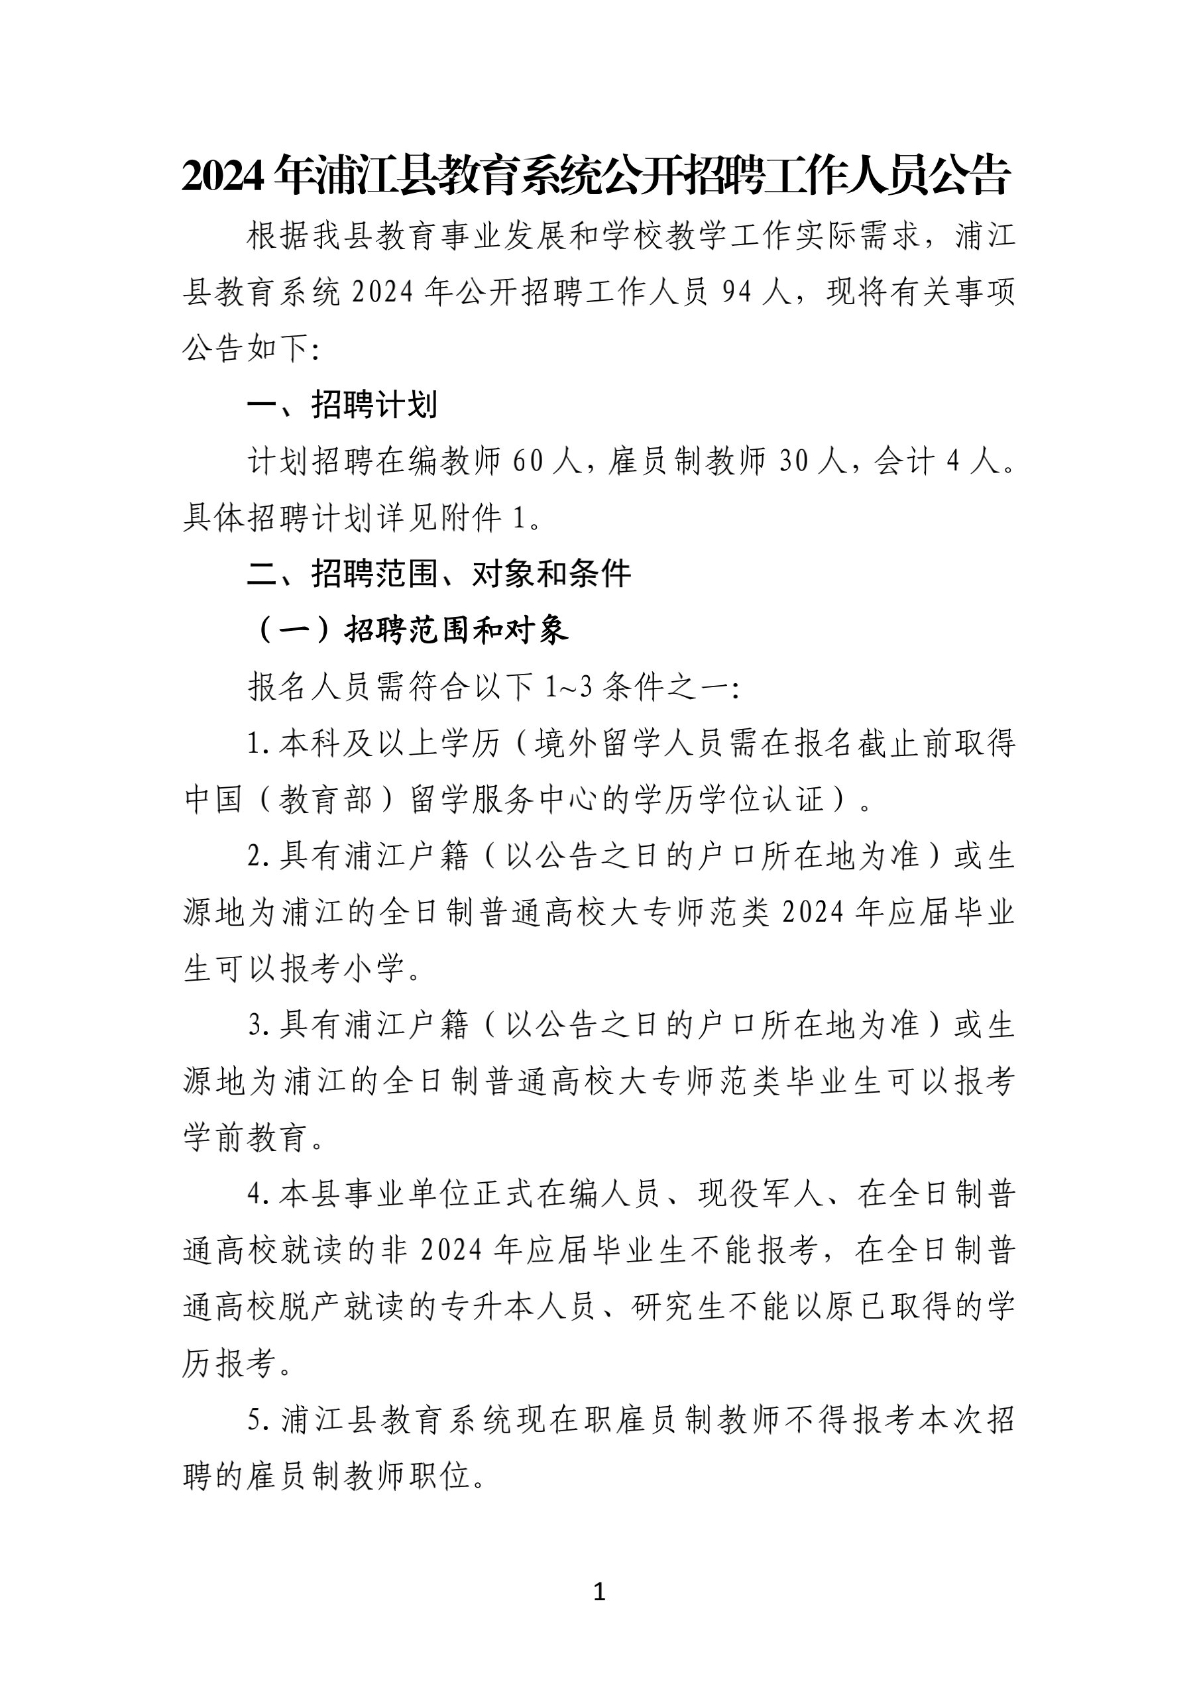 2024年浦江县教育系统公开招聘工作人员公告(1)_1.jpg